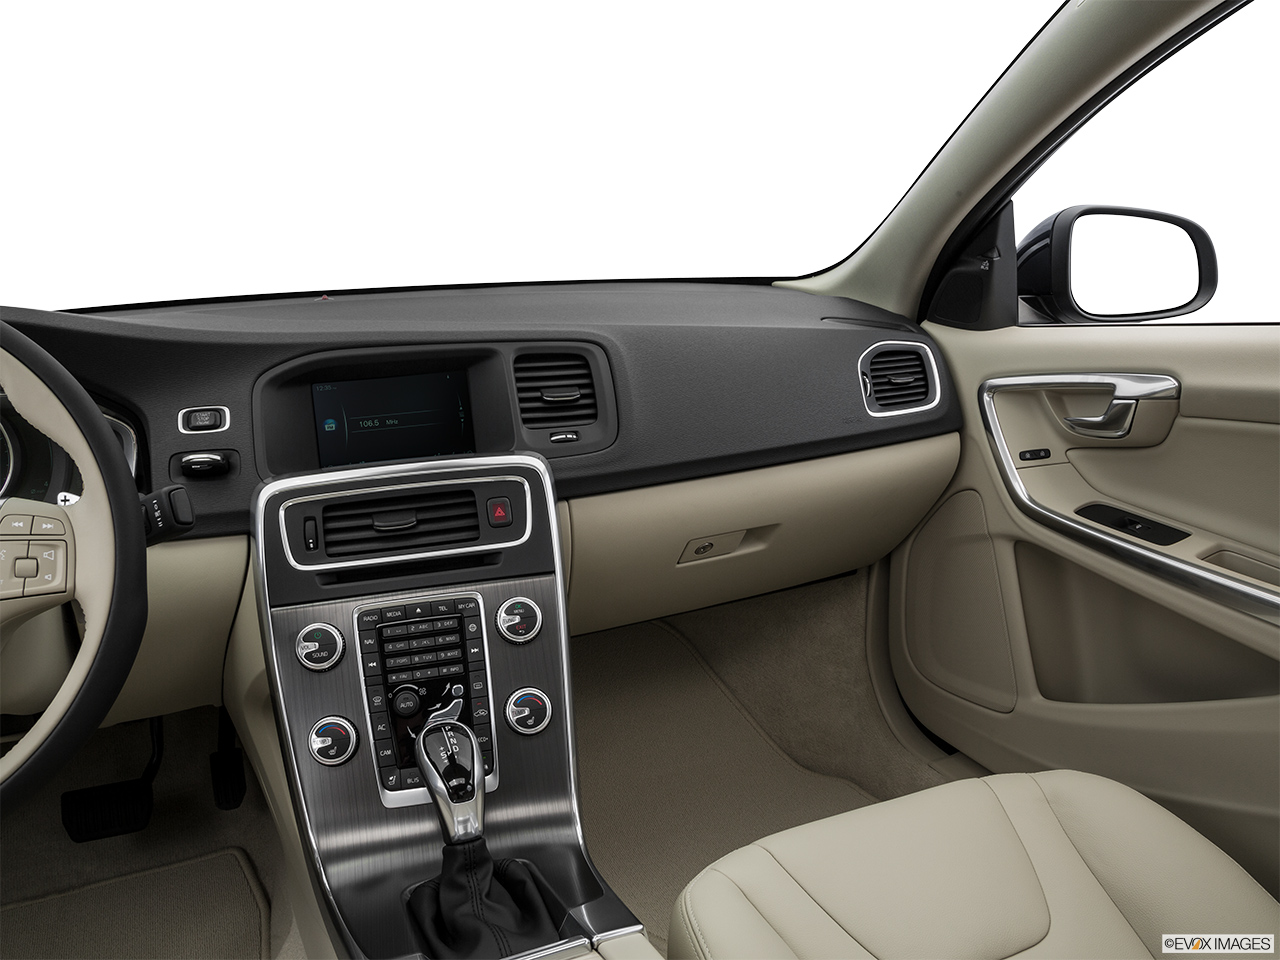 2016 Volvo S60 T5 Drive-E FWD Premier Center Console/Passenger Side. 